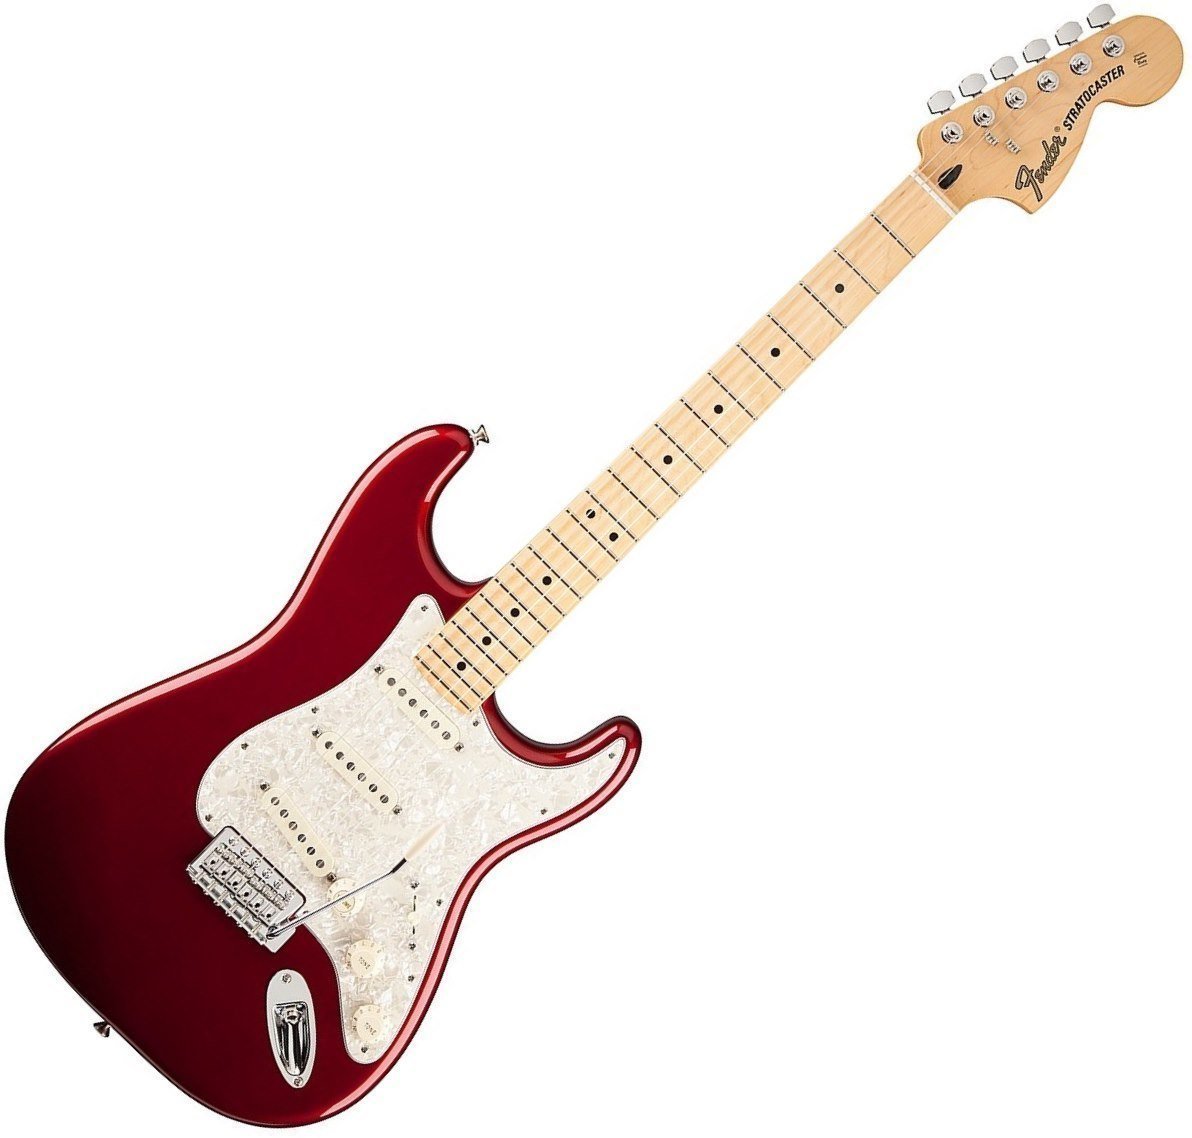 Ηλεκτρική Κιθάρα Fender Deluxe Roadhouse Stratocaster Maple Fingerboard, Candy Apple Red